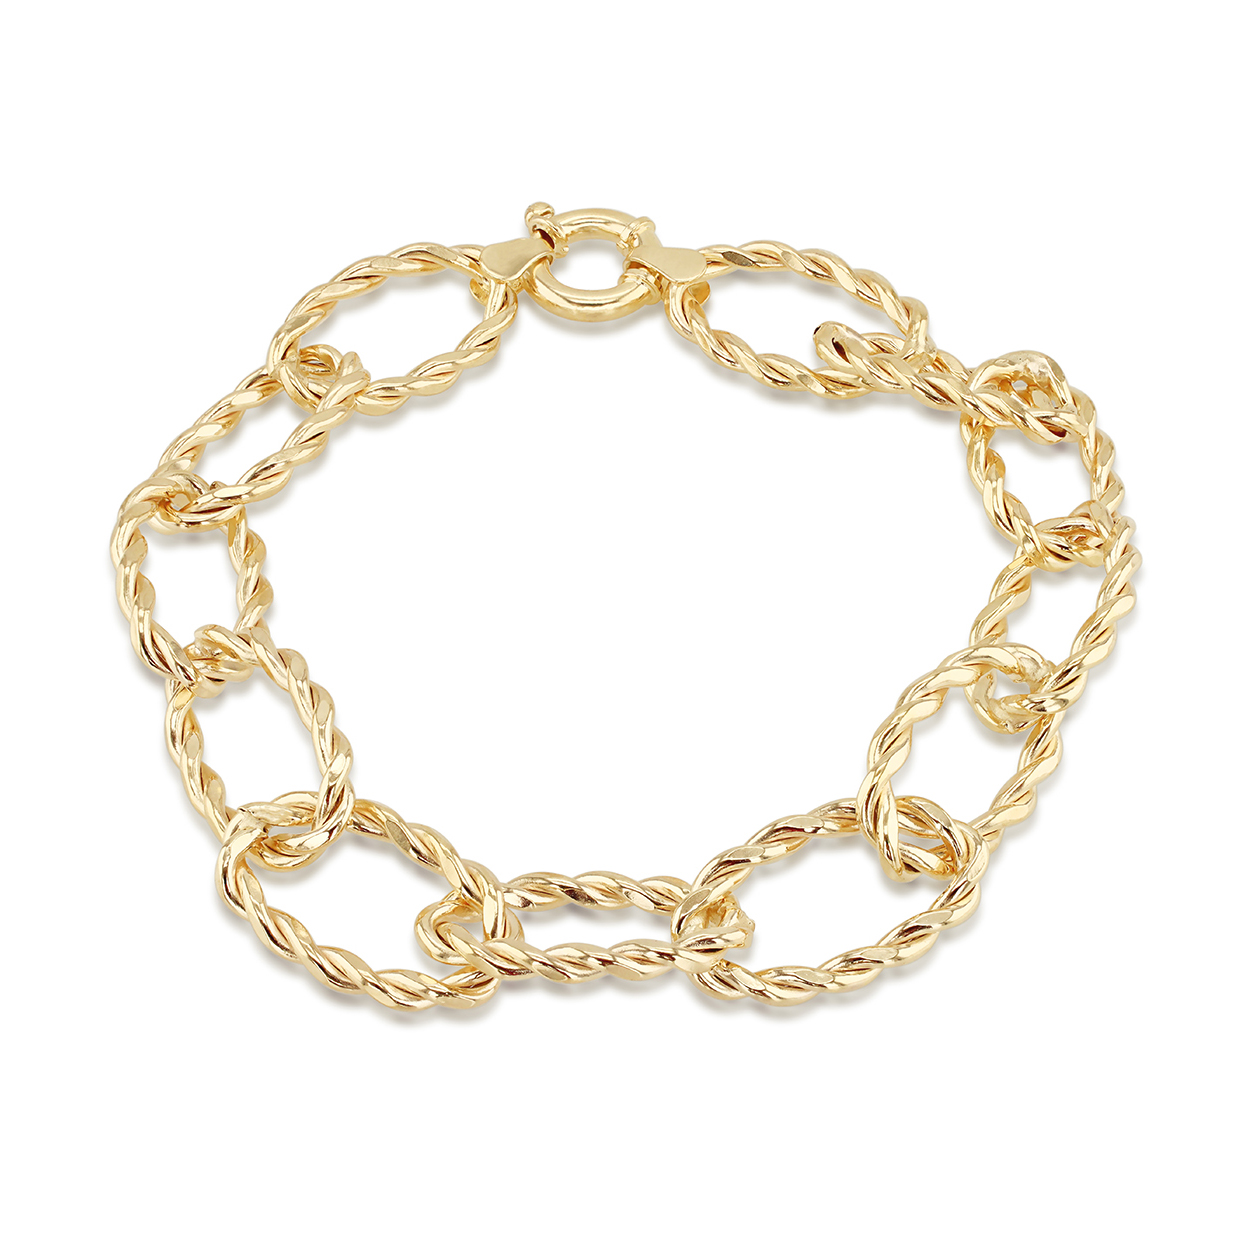 Fancy Twisted Link Bracelet in 14k Yellow Gold